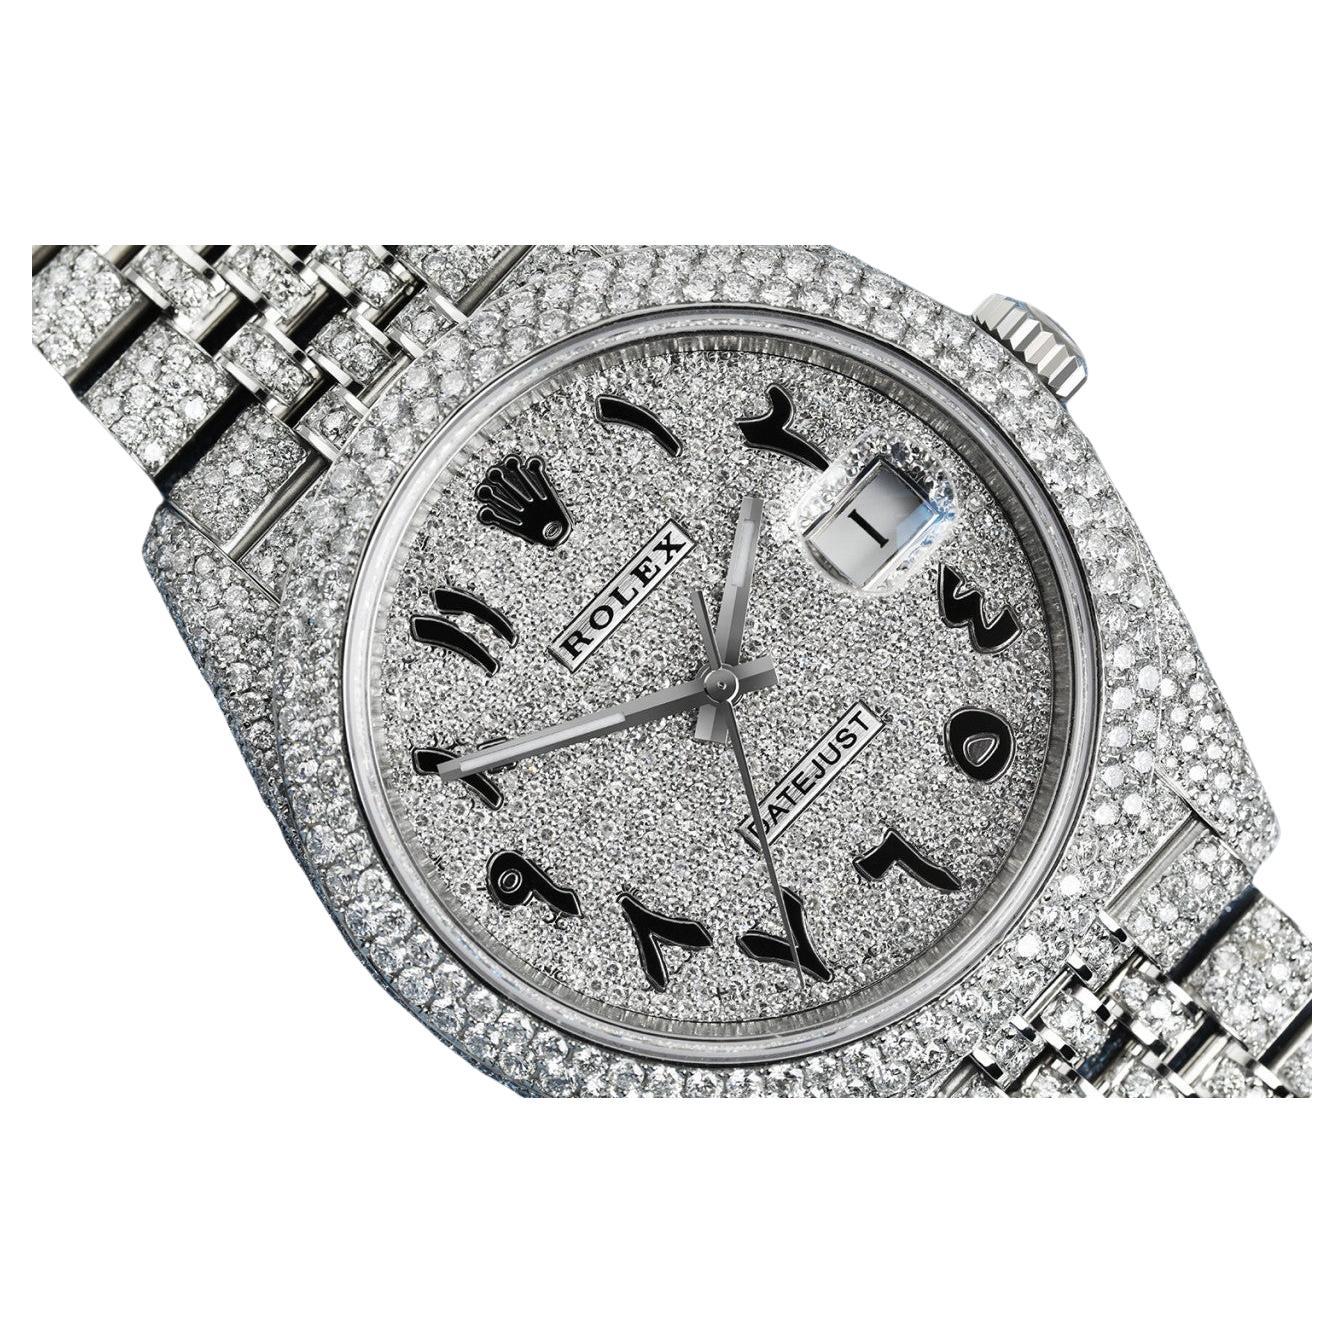 Rolex Datejust 41 Edelstahl-Diamant-Edelstahl-Uhr mit arabischen Ziffern